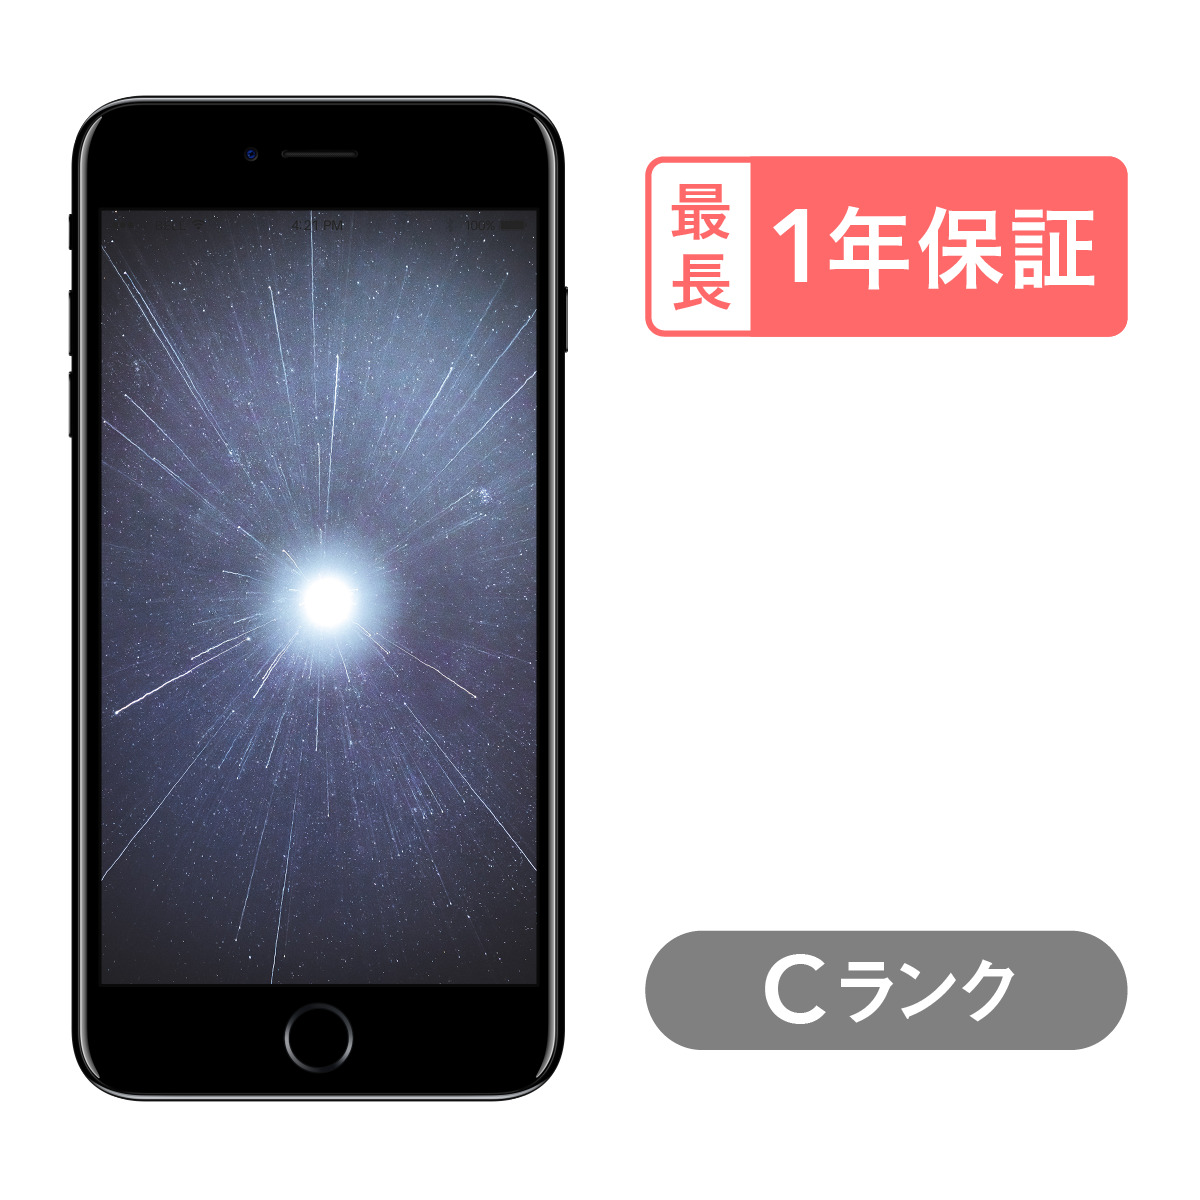 販売注文【週末限定値下げ】 iPhone 7 Plus Gold 128 GB ドコモ スマートフォン本体